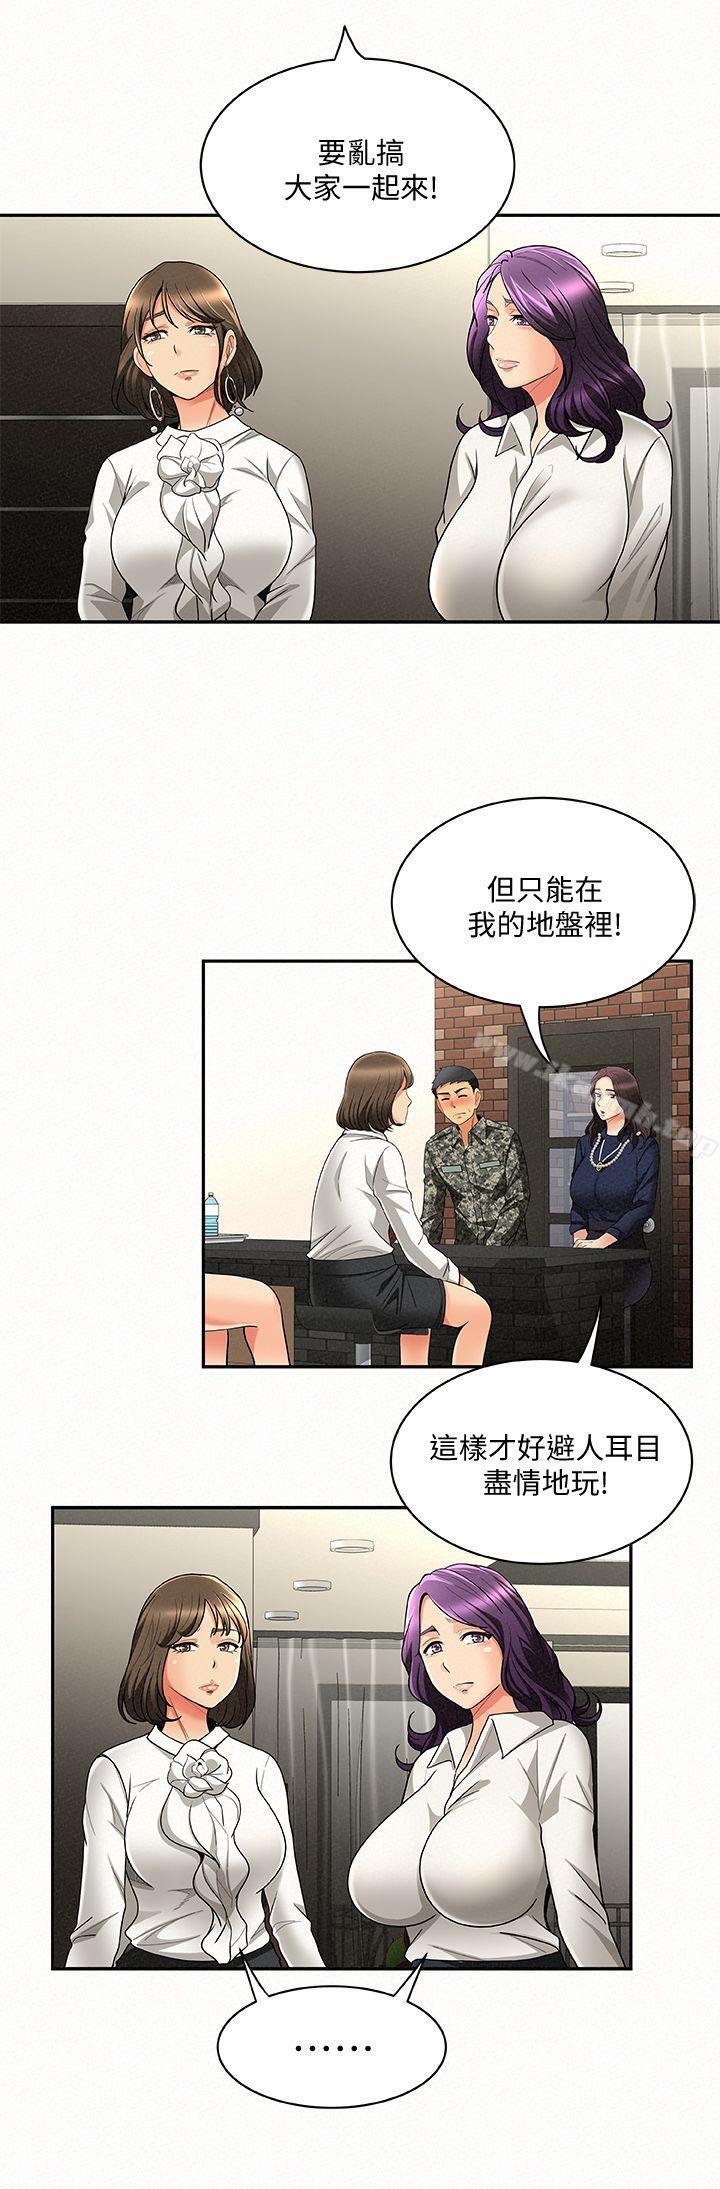 韩国漫画报告夫人韩漫_报告夫人-第3话-想不想尝尝其他有夫之妇?在线免费阅读-韩国漫画-第18张图片